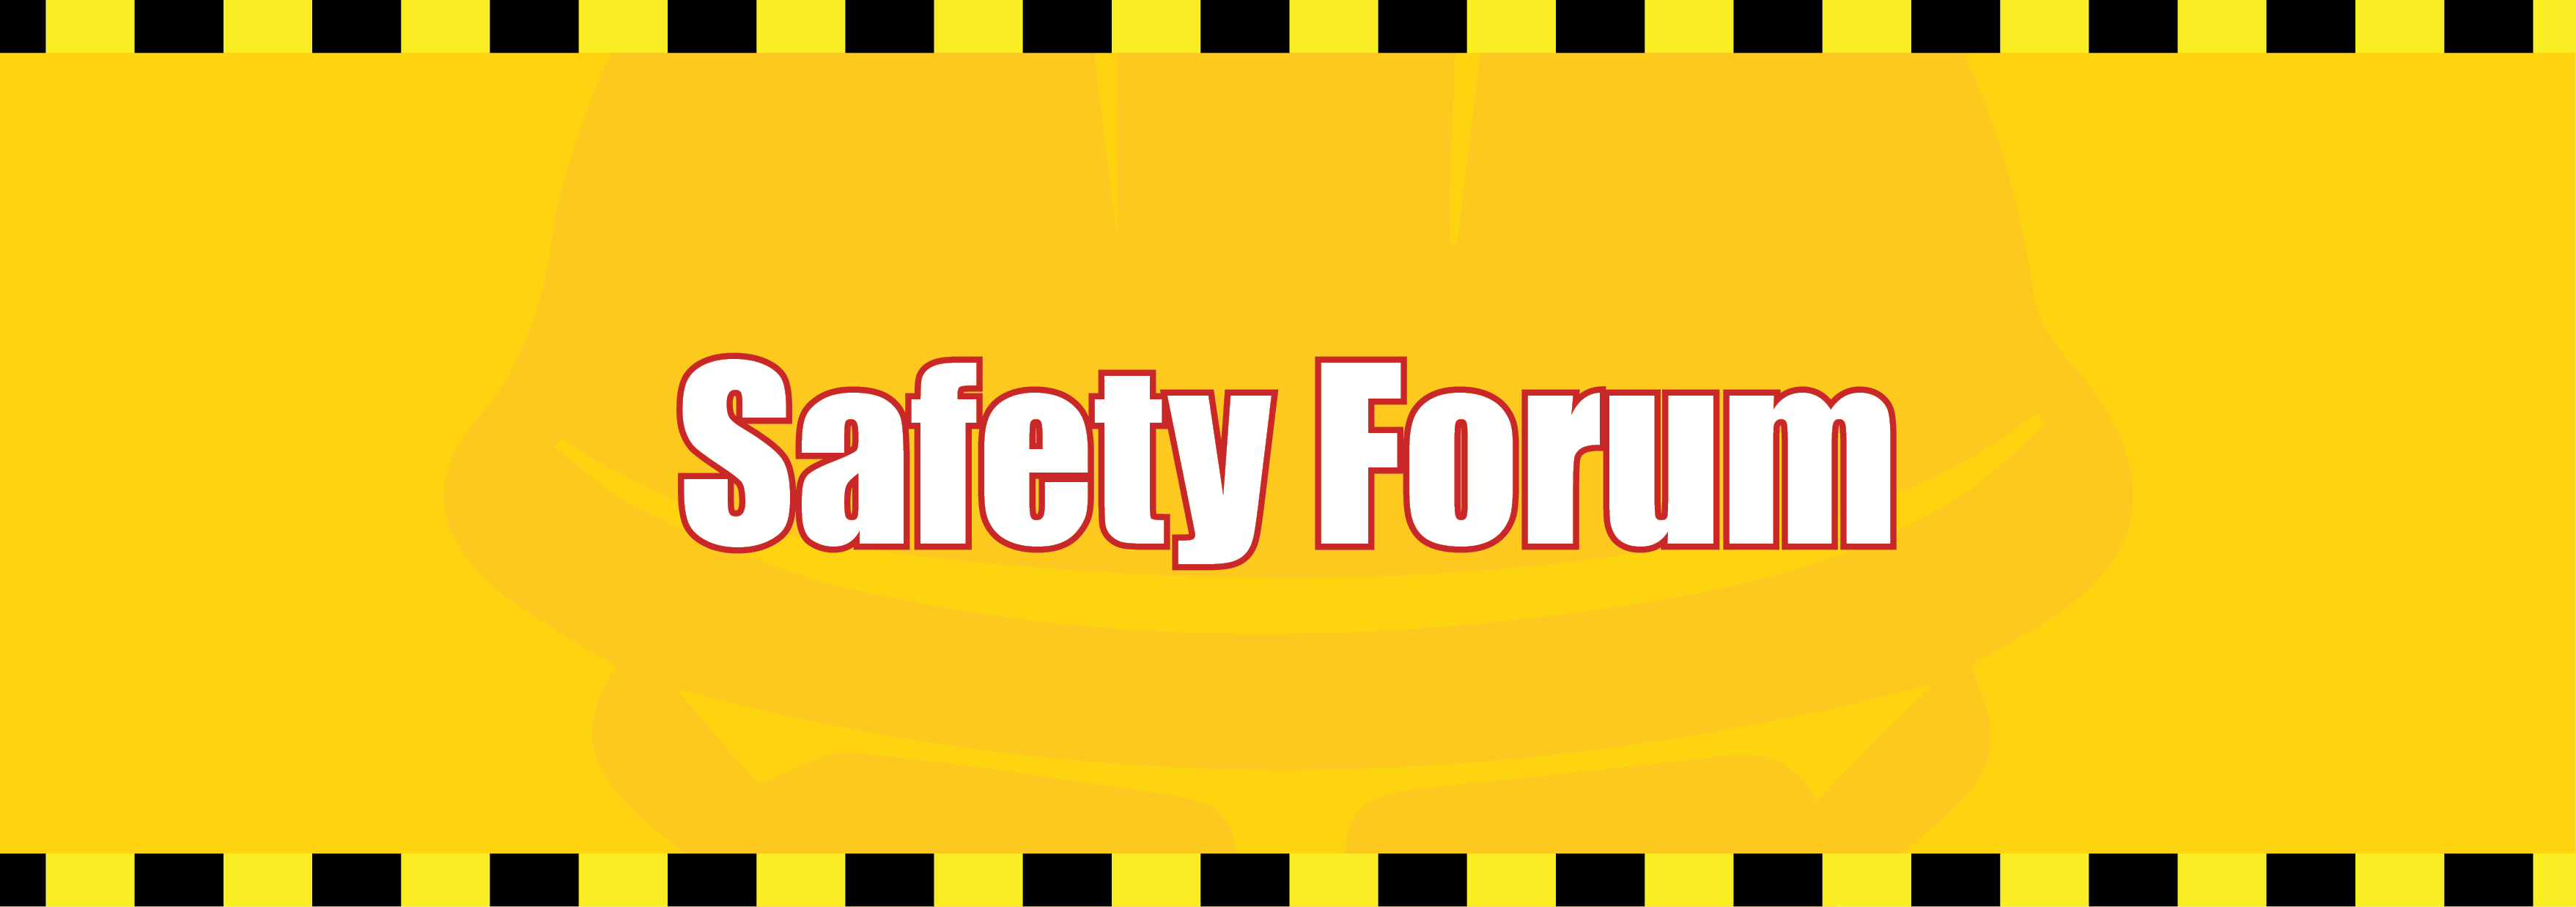  Safety Forum